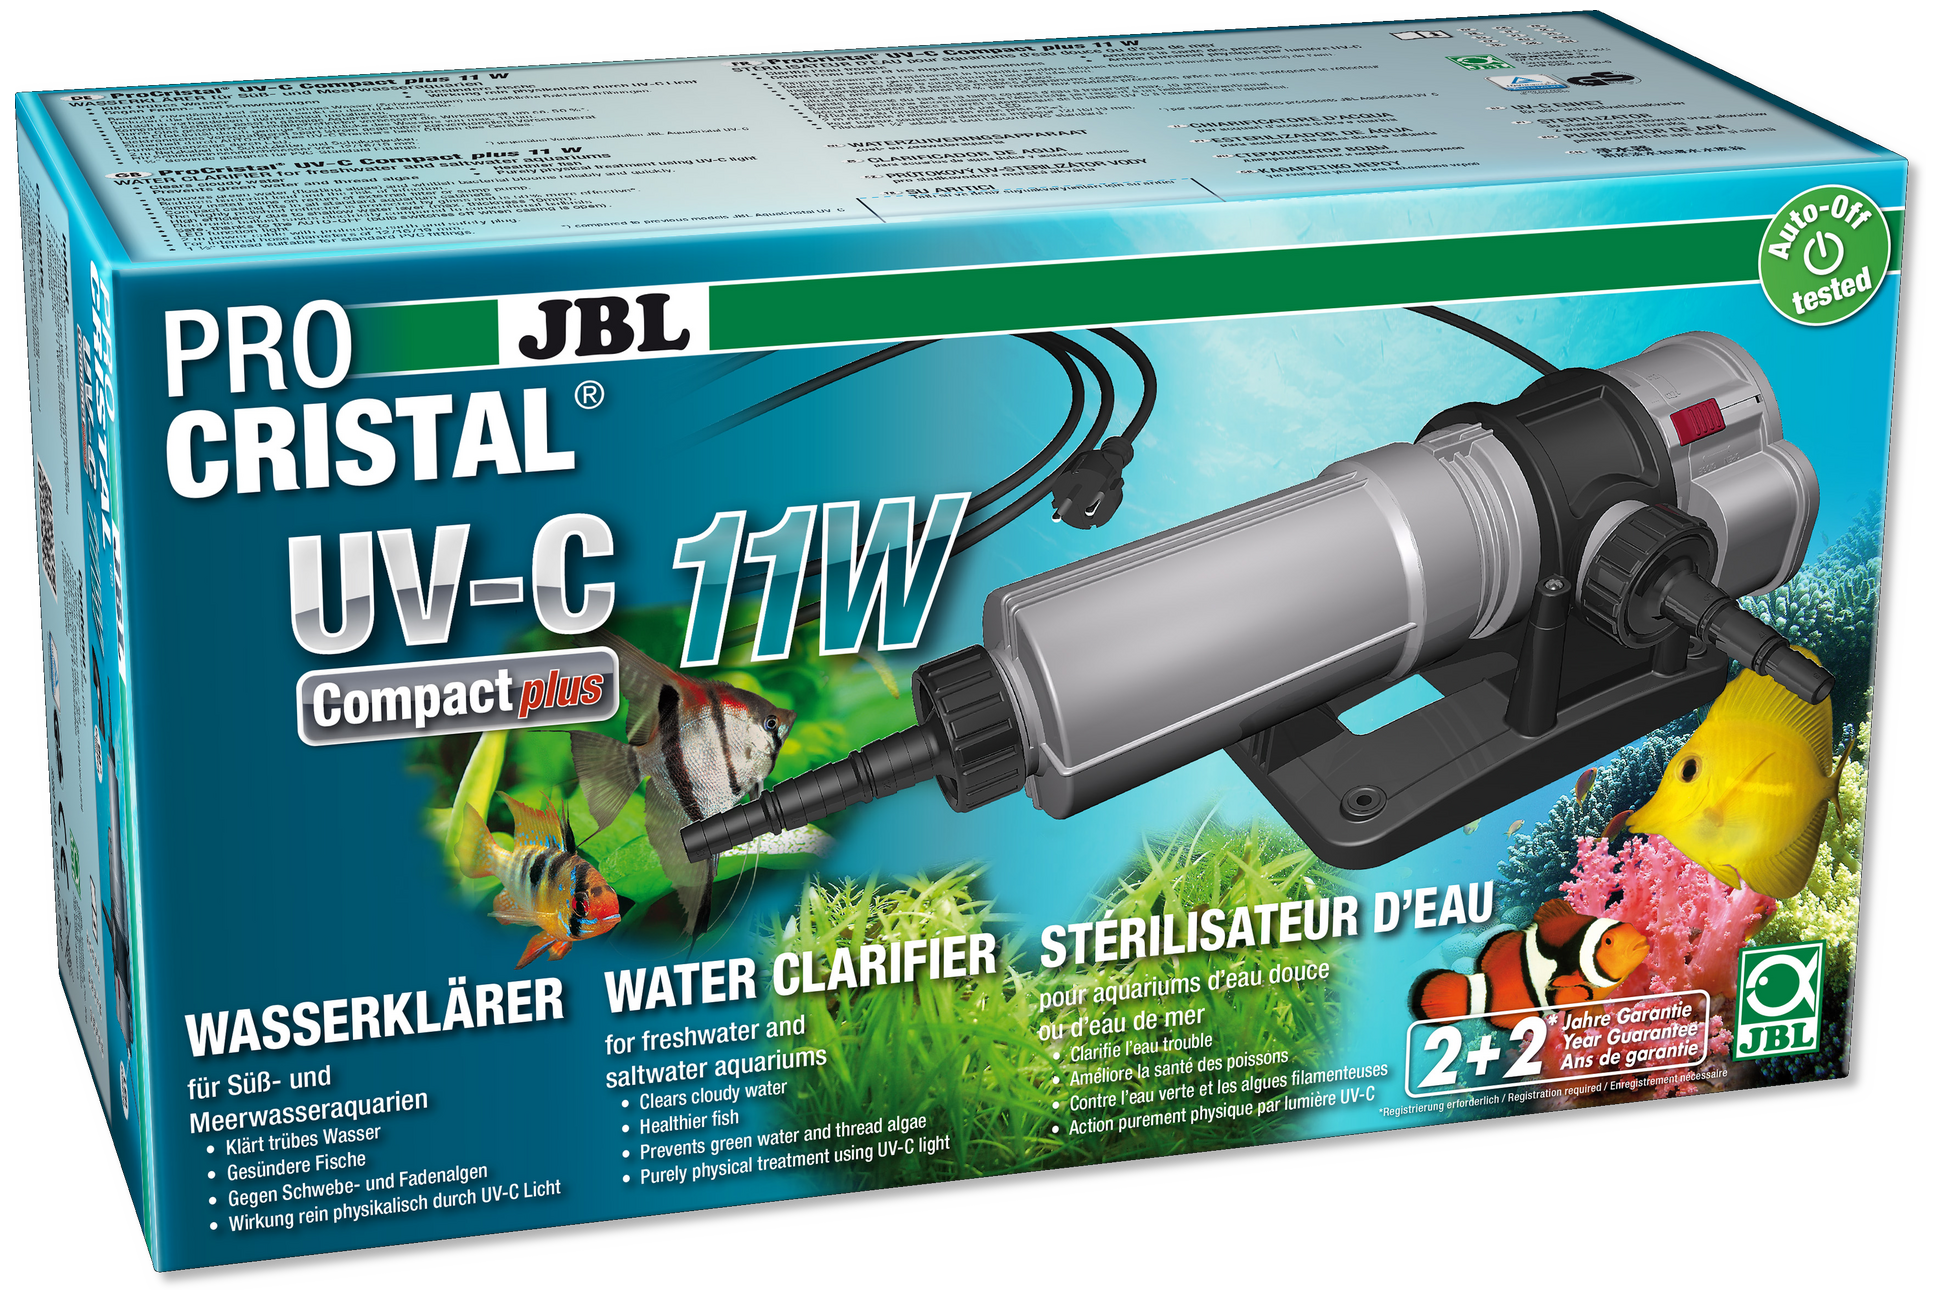 JBL ProCristal UV-C Compact plus 11 Watt